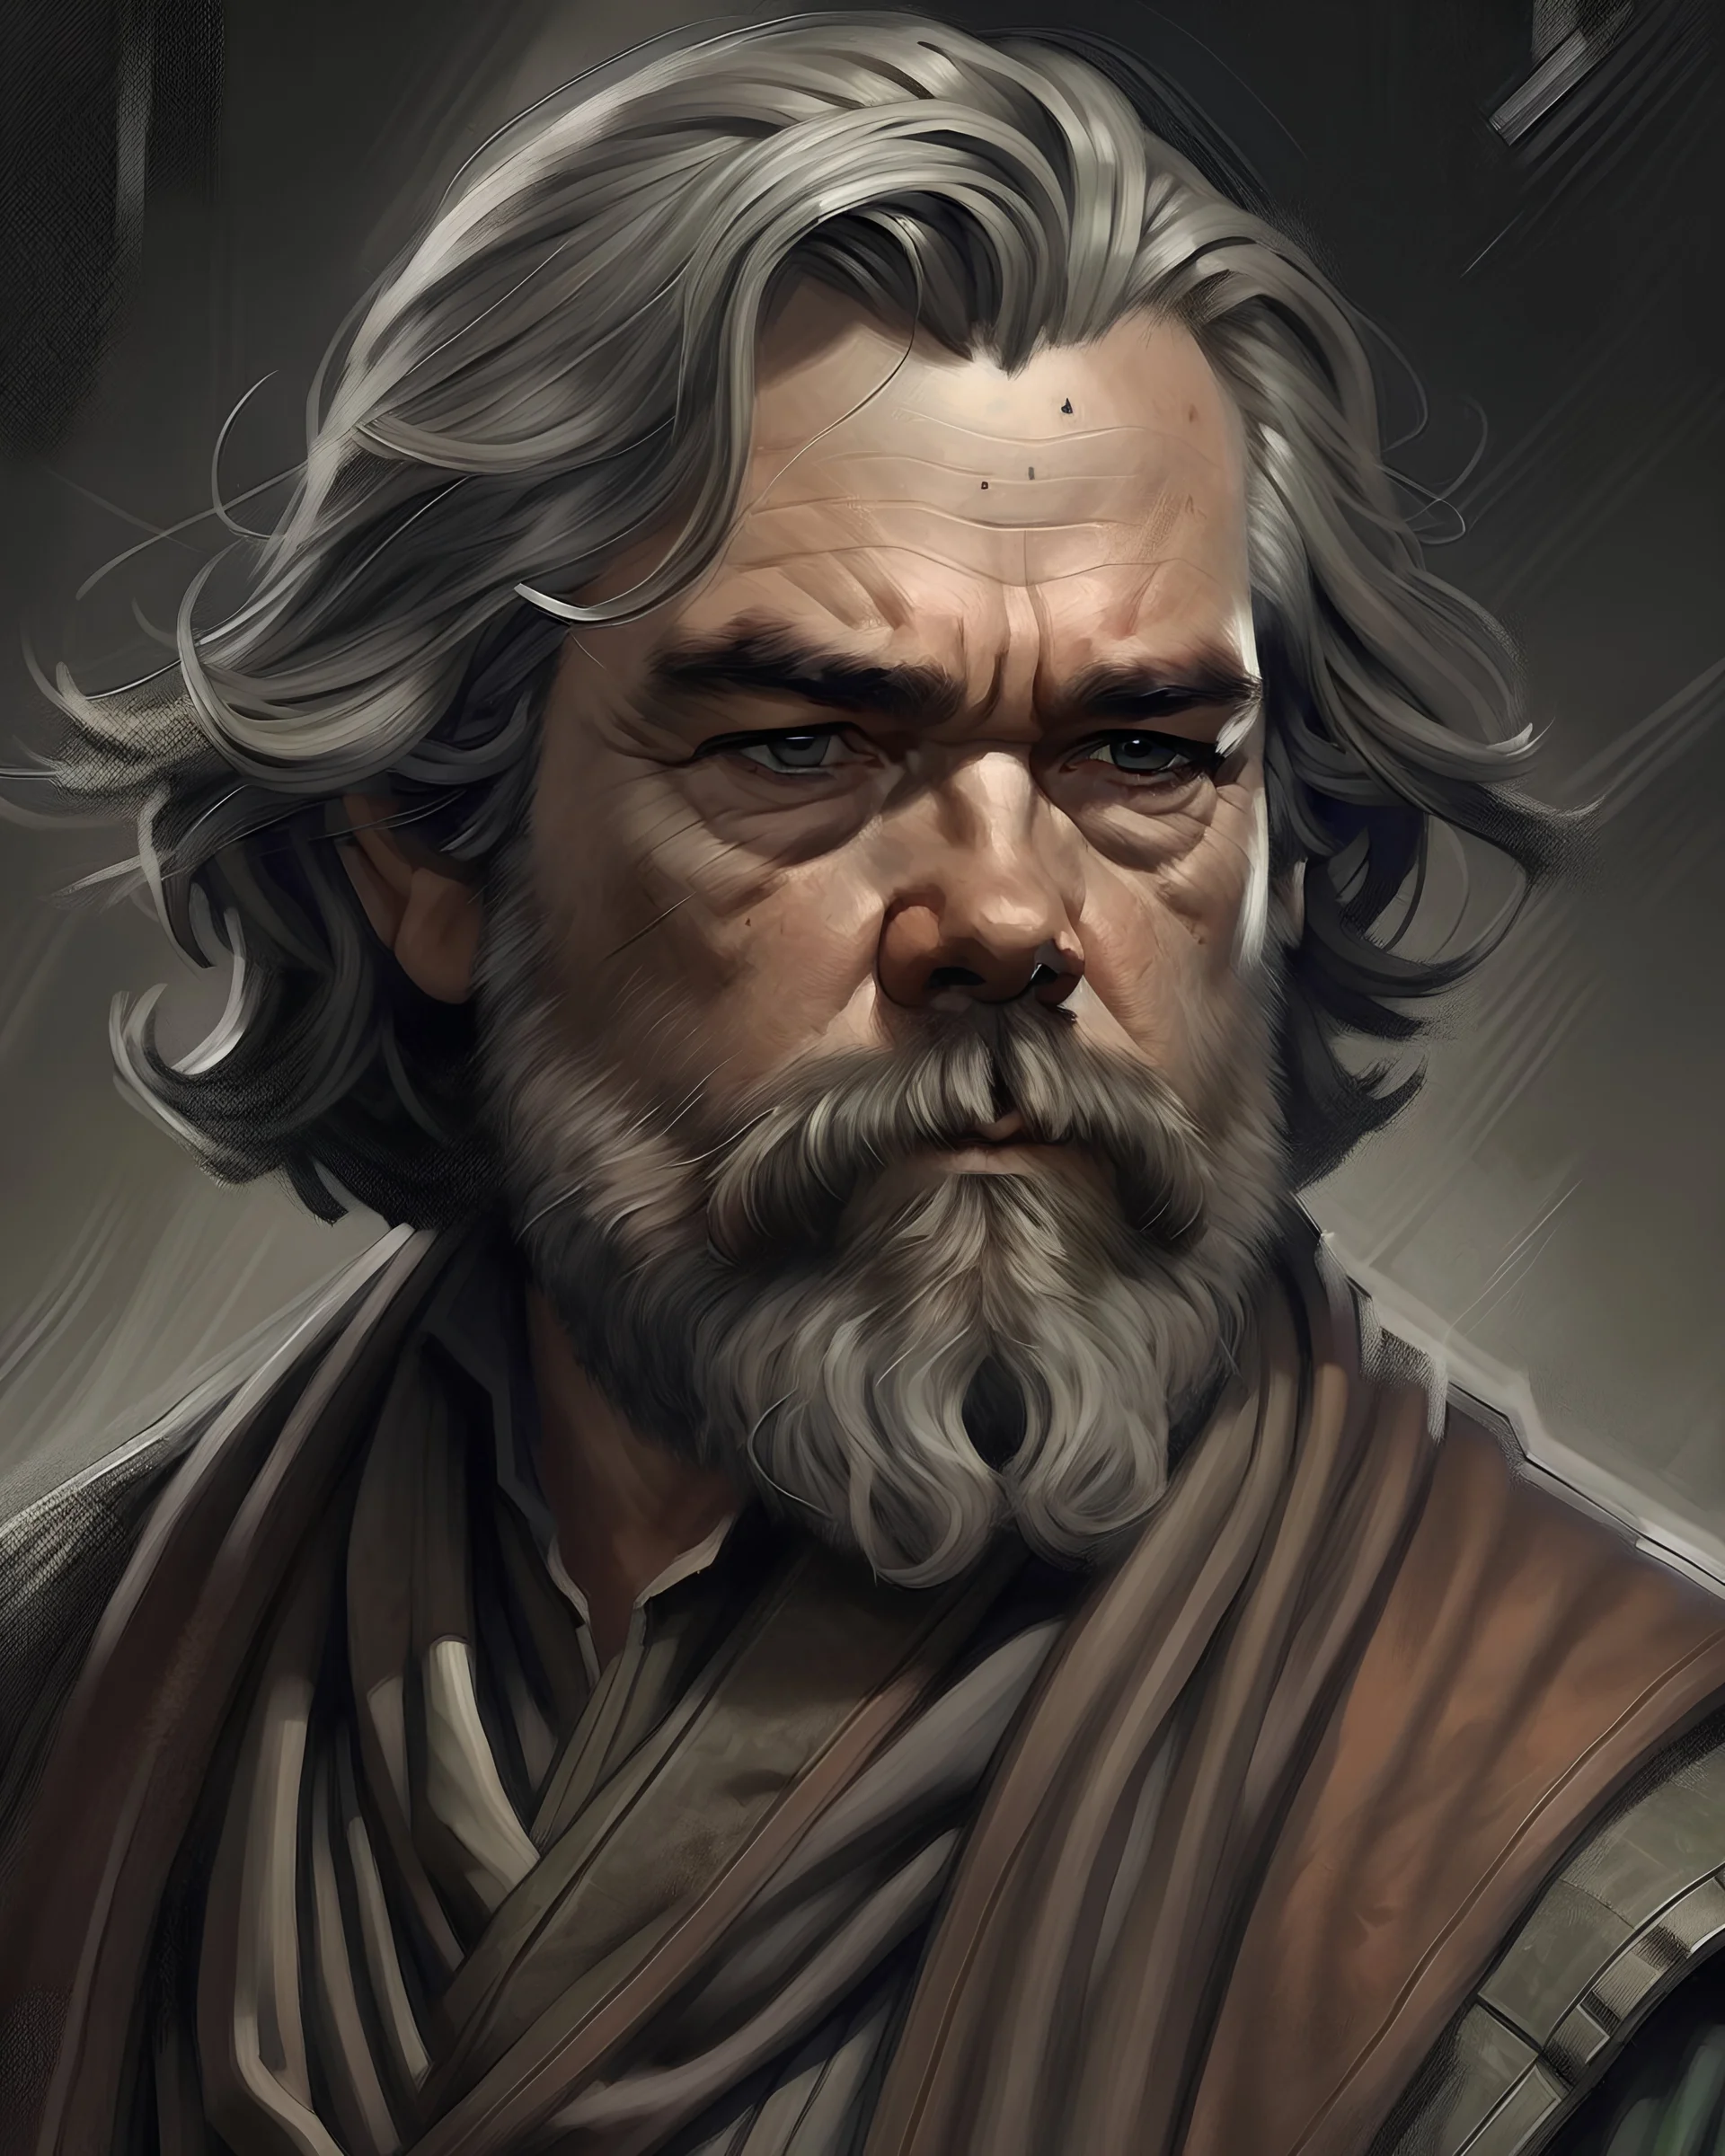 Portrait of a war hardened Jedi, Mid 20s, looks like Kurt Russel